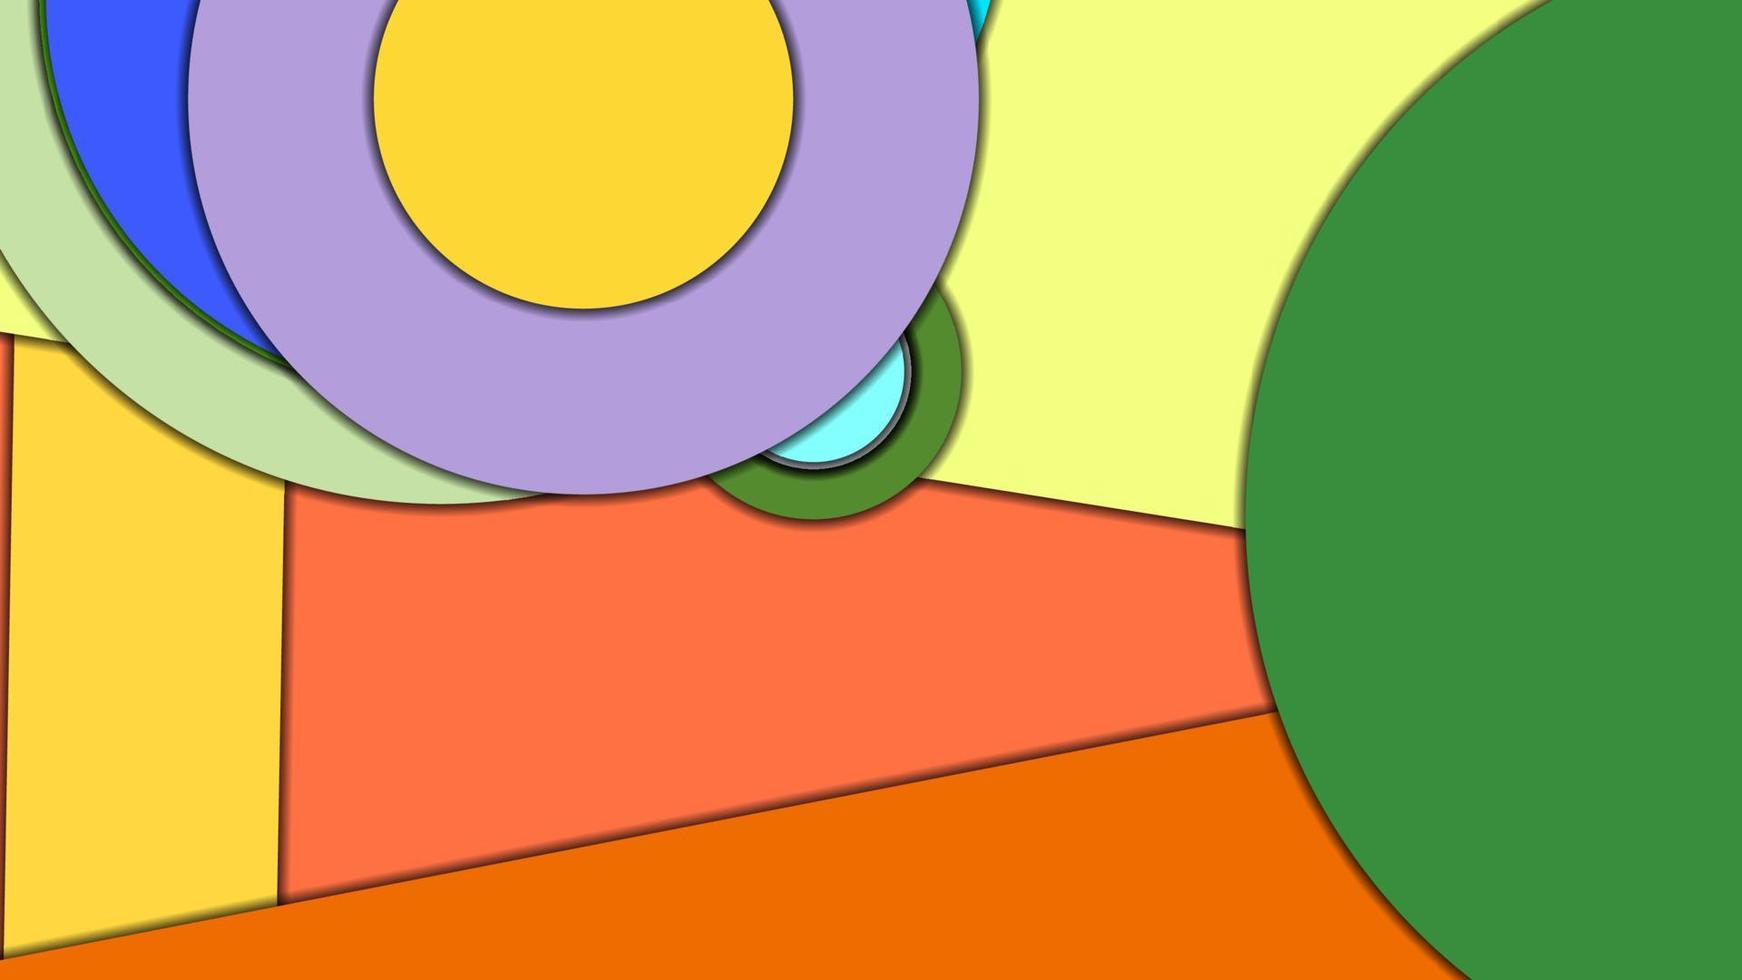 arrière-plan vectoriel coloré géométrique abstrait dans un style de conception matérielle avec des cercles concentriques et des rectangles tournés avec des ombres, imitant du papier découpé.